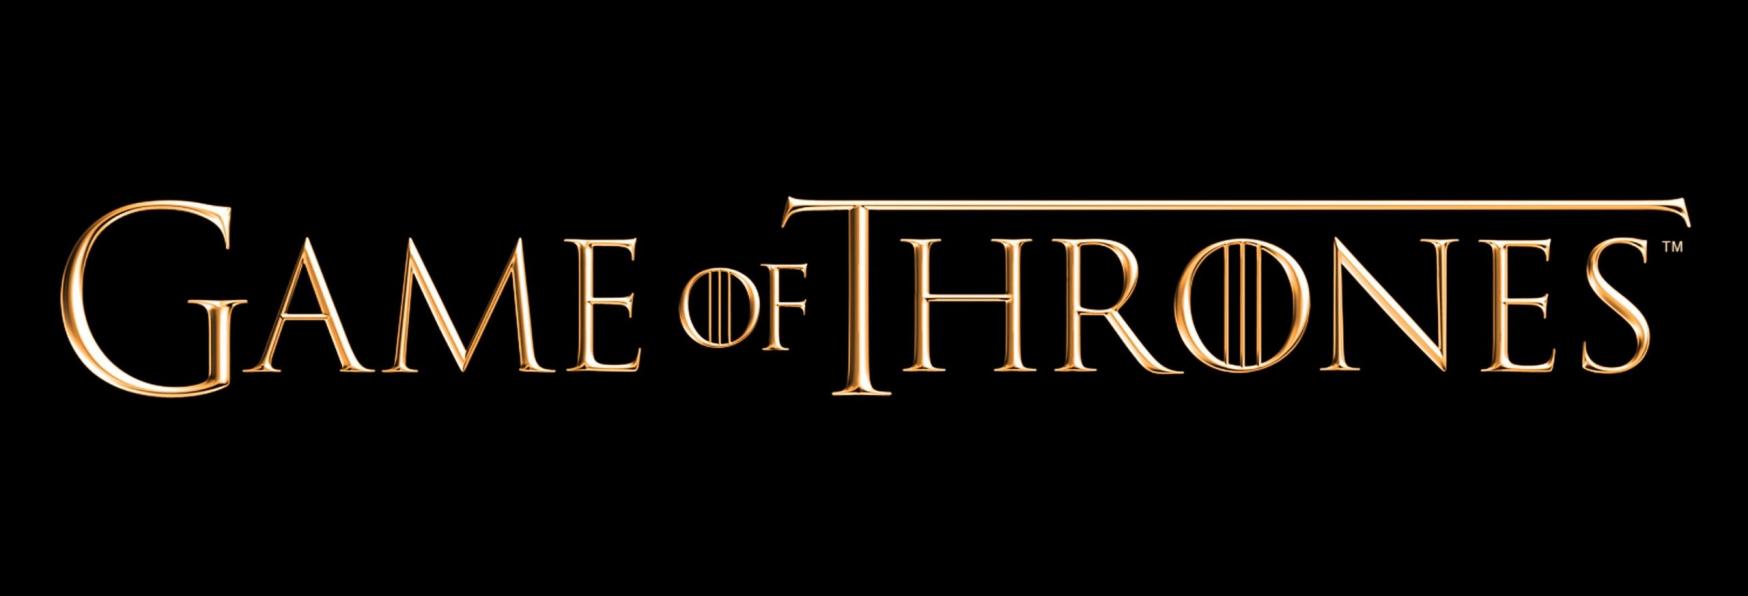 Game of Thrones: George R.R. Martin aggiorna i Fan sui Prossimi Progetti. Arriveranno 5 Serie TV Spin-off?